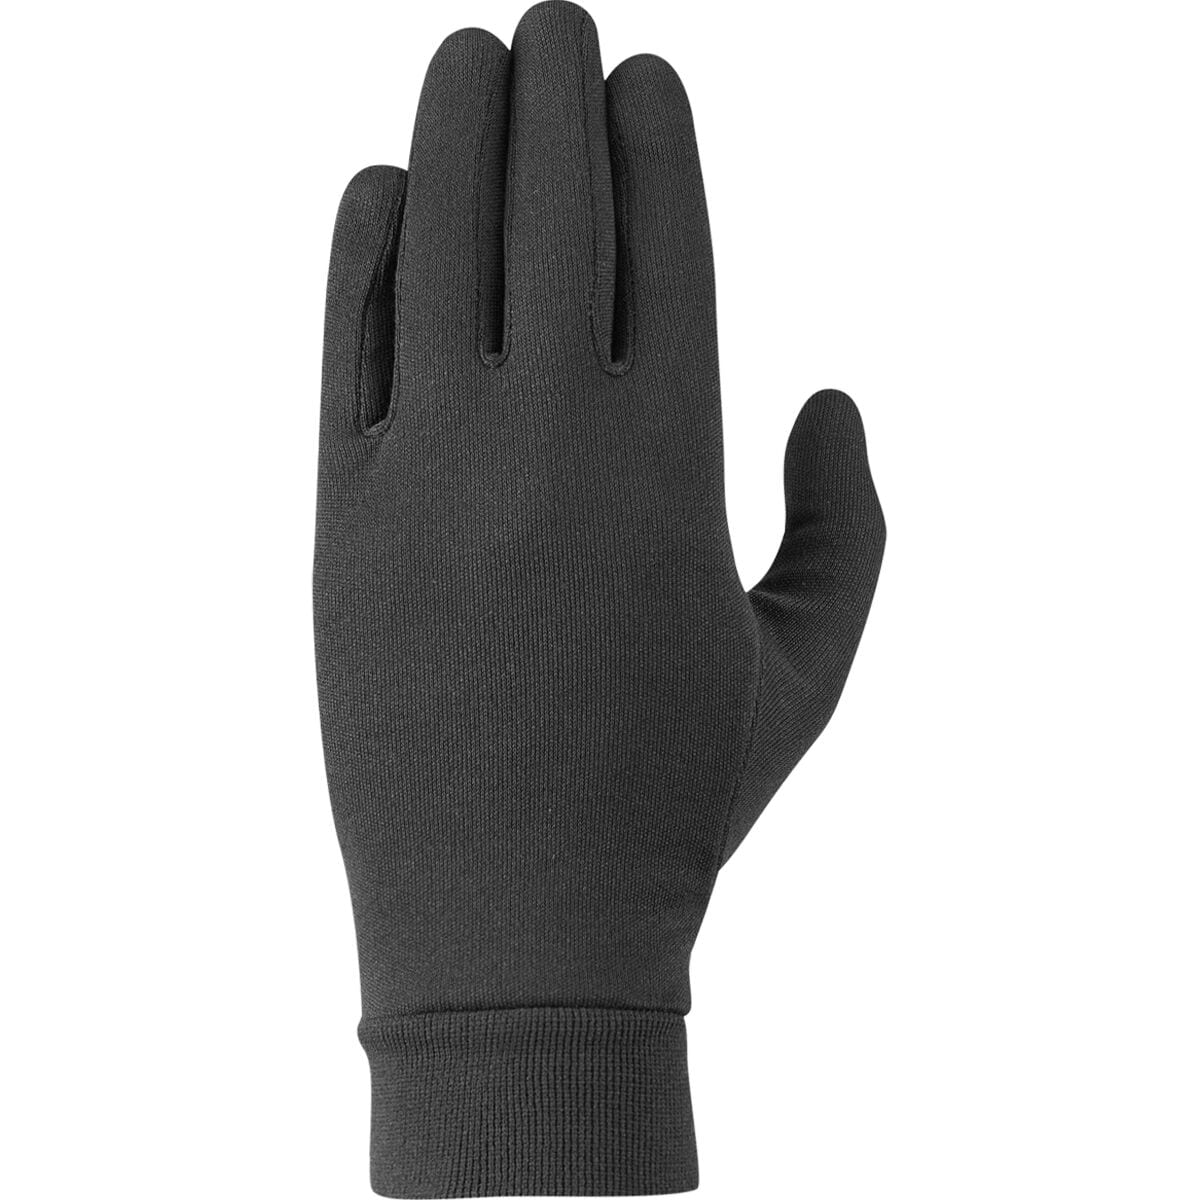 Rab Silkwarm Glove - Men's Black